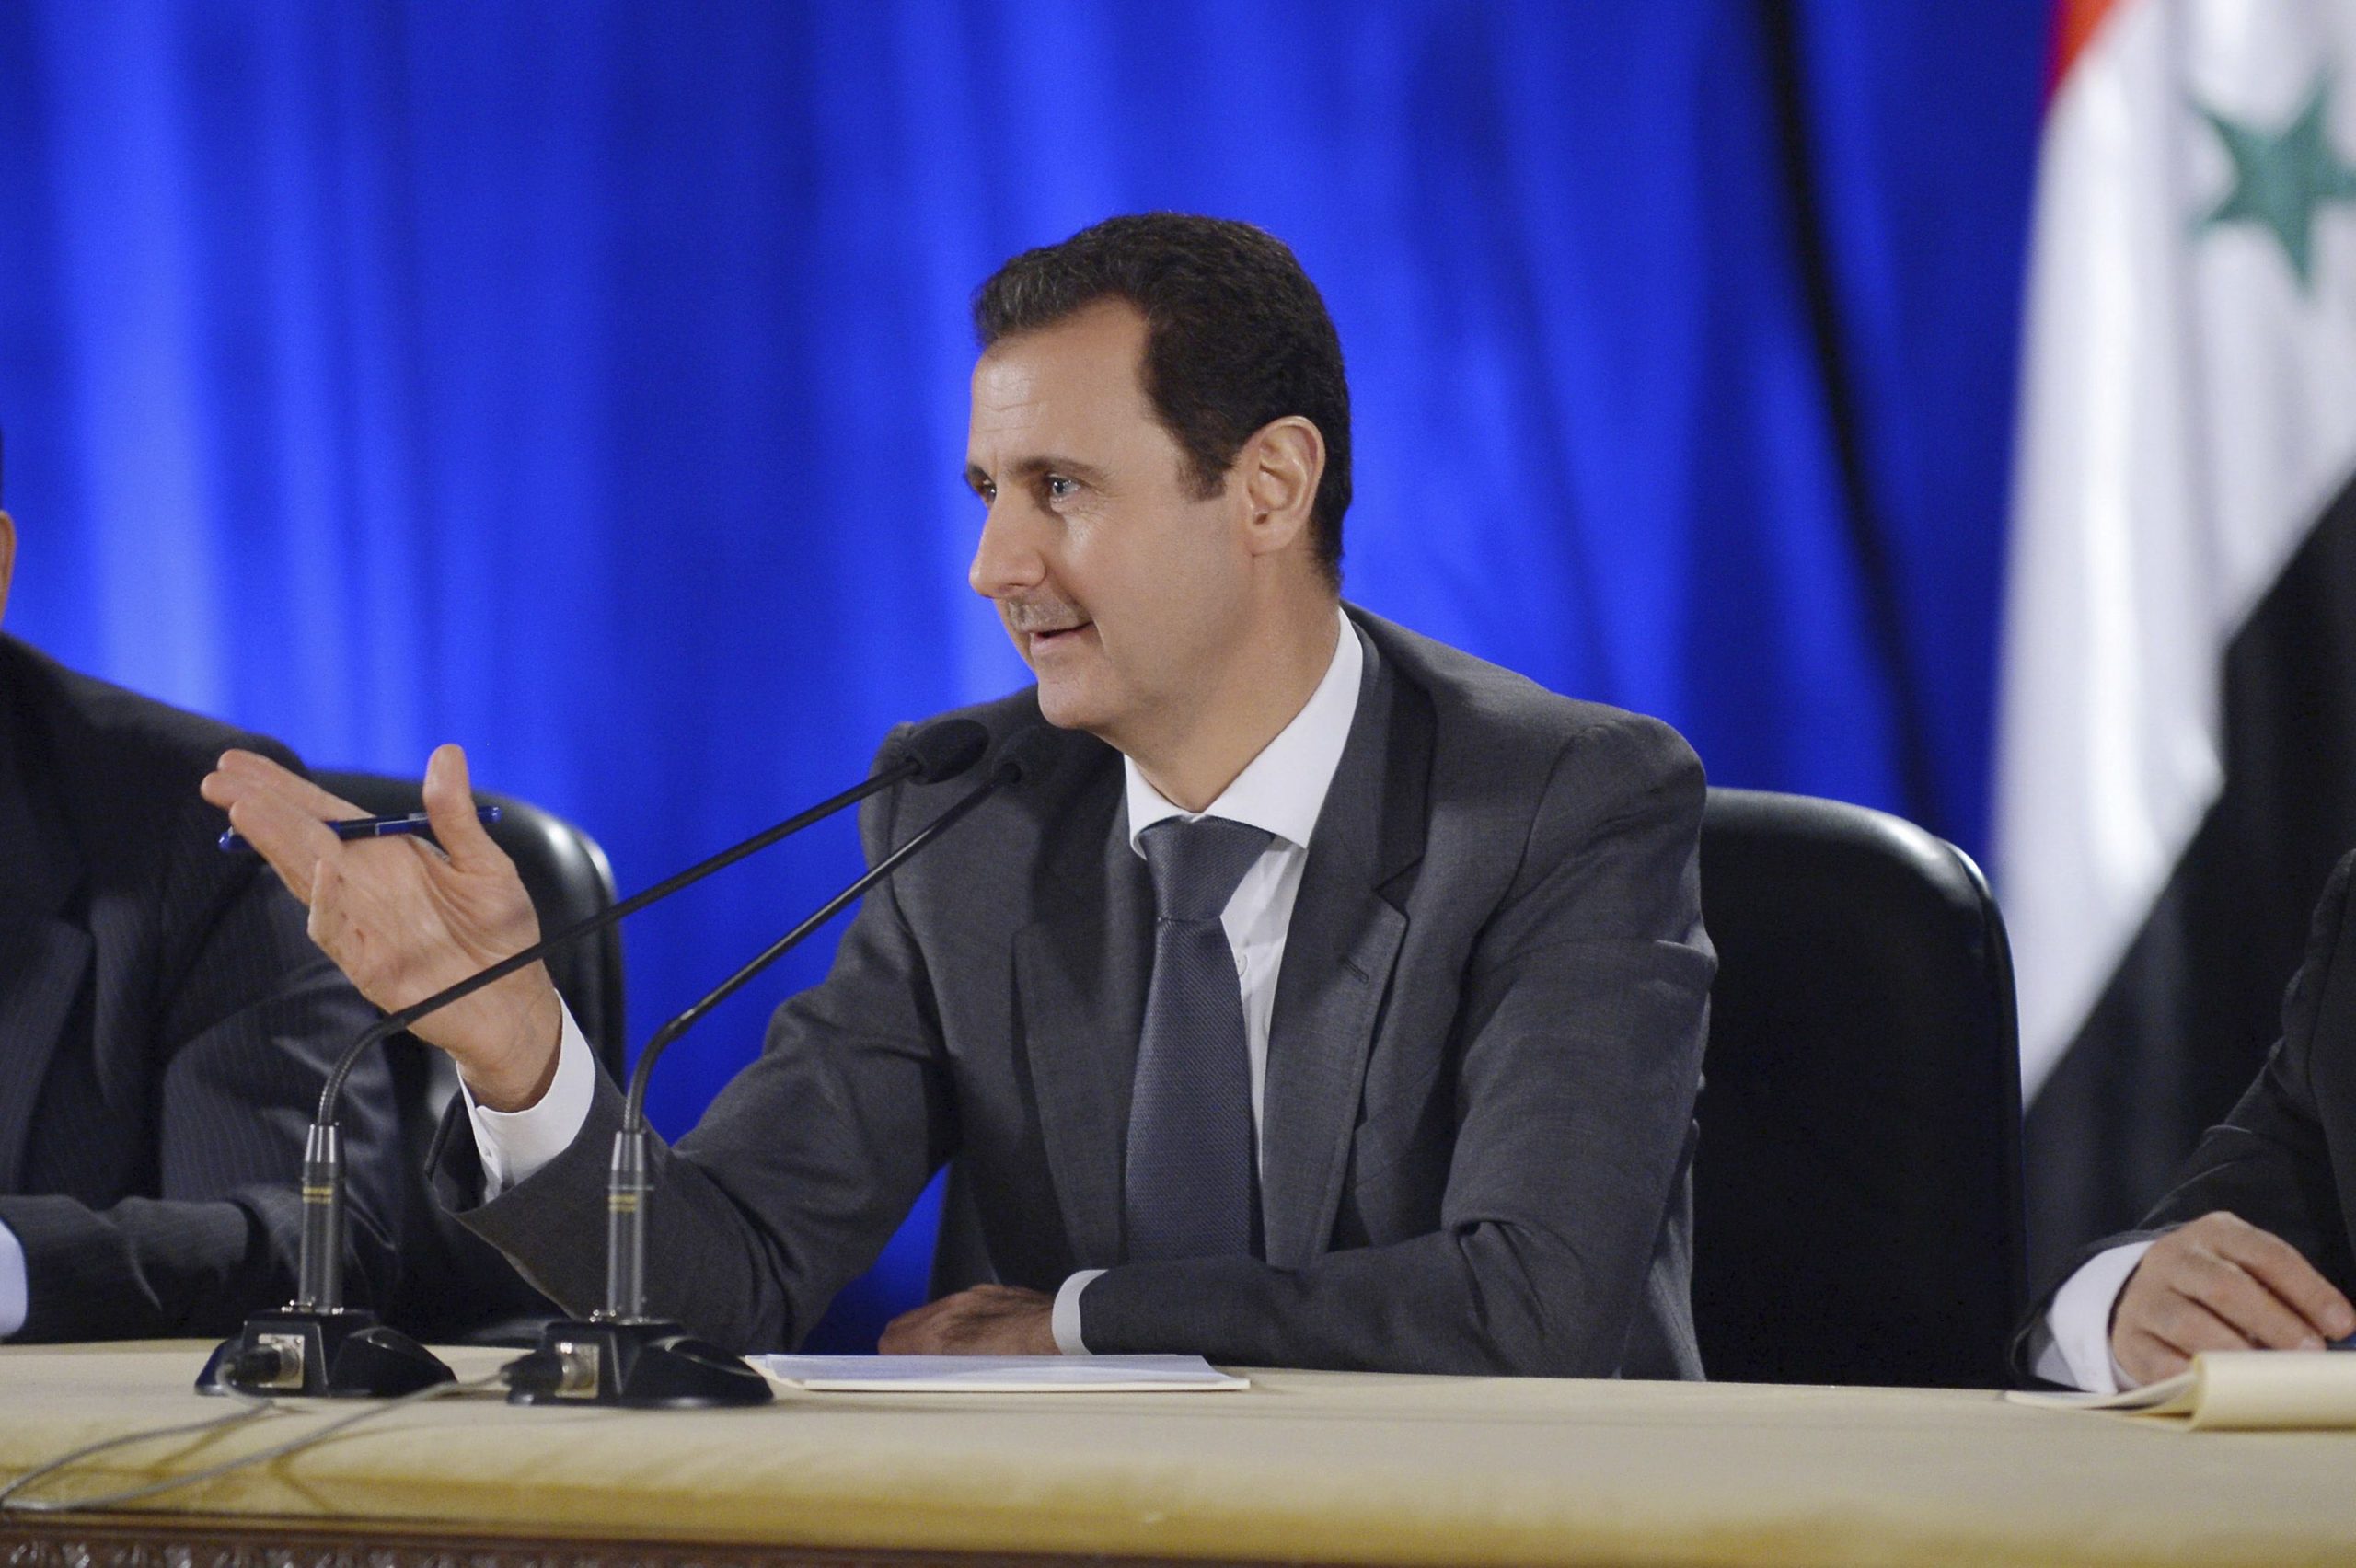 Έφτασε στο Πεκίνο ο Σύρος πρόεδρος Μπασάρ αλ Άσαντ – Θα συζητήσει για την ανοικοδόμηση της χώρας του